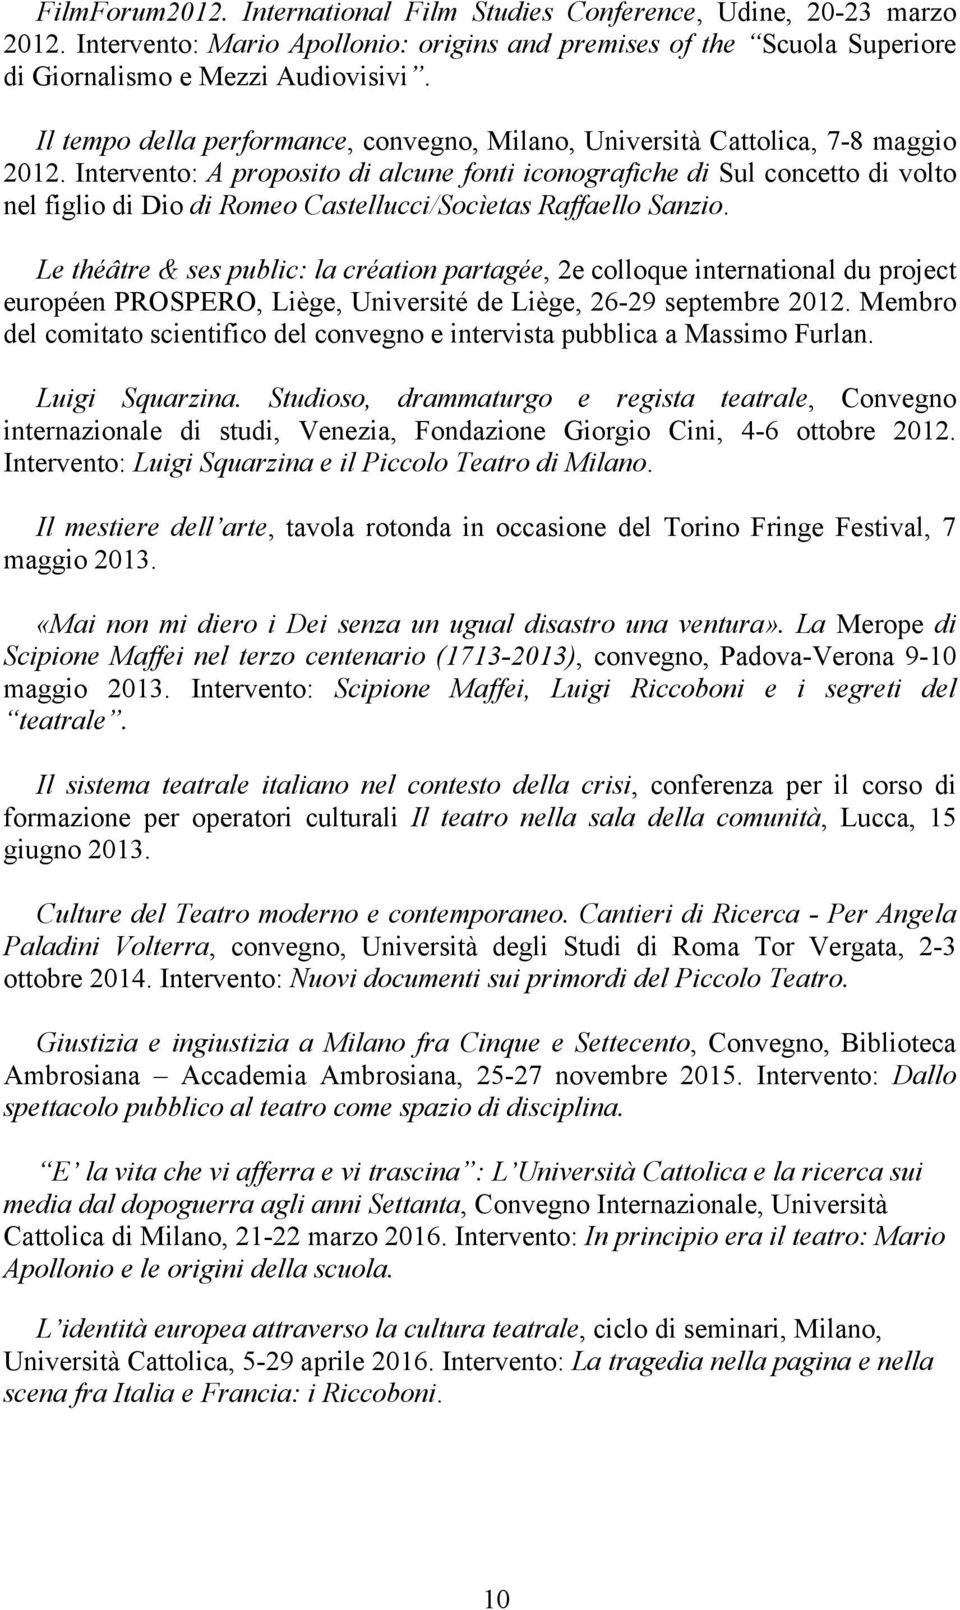 Intervento: A proposito di alcune fonti iconografiche di Sul concetto di volto nel figlio di Dio di Romeo Castellucci/Socìetas Raffaello Sanzio.